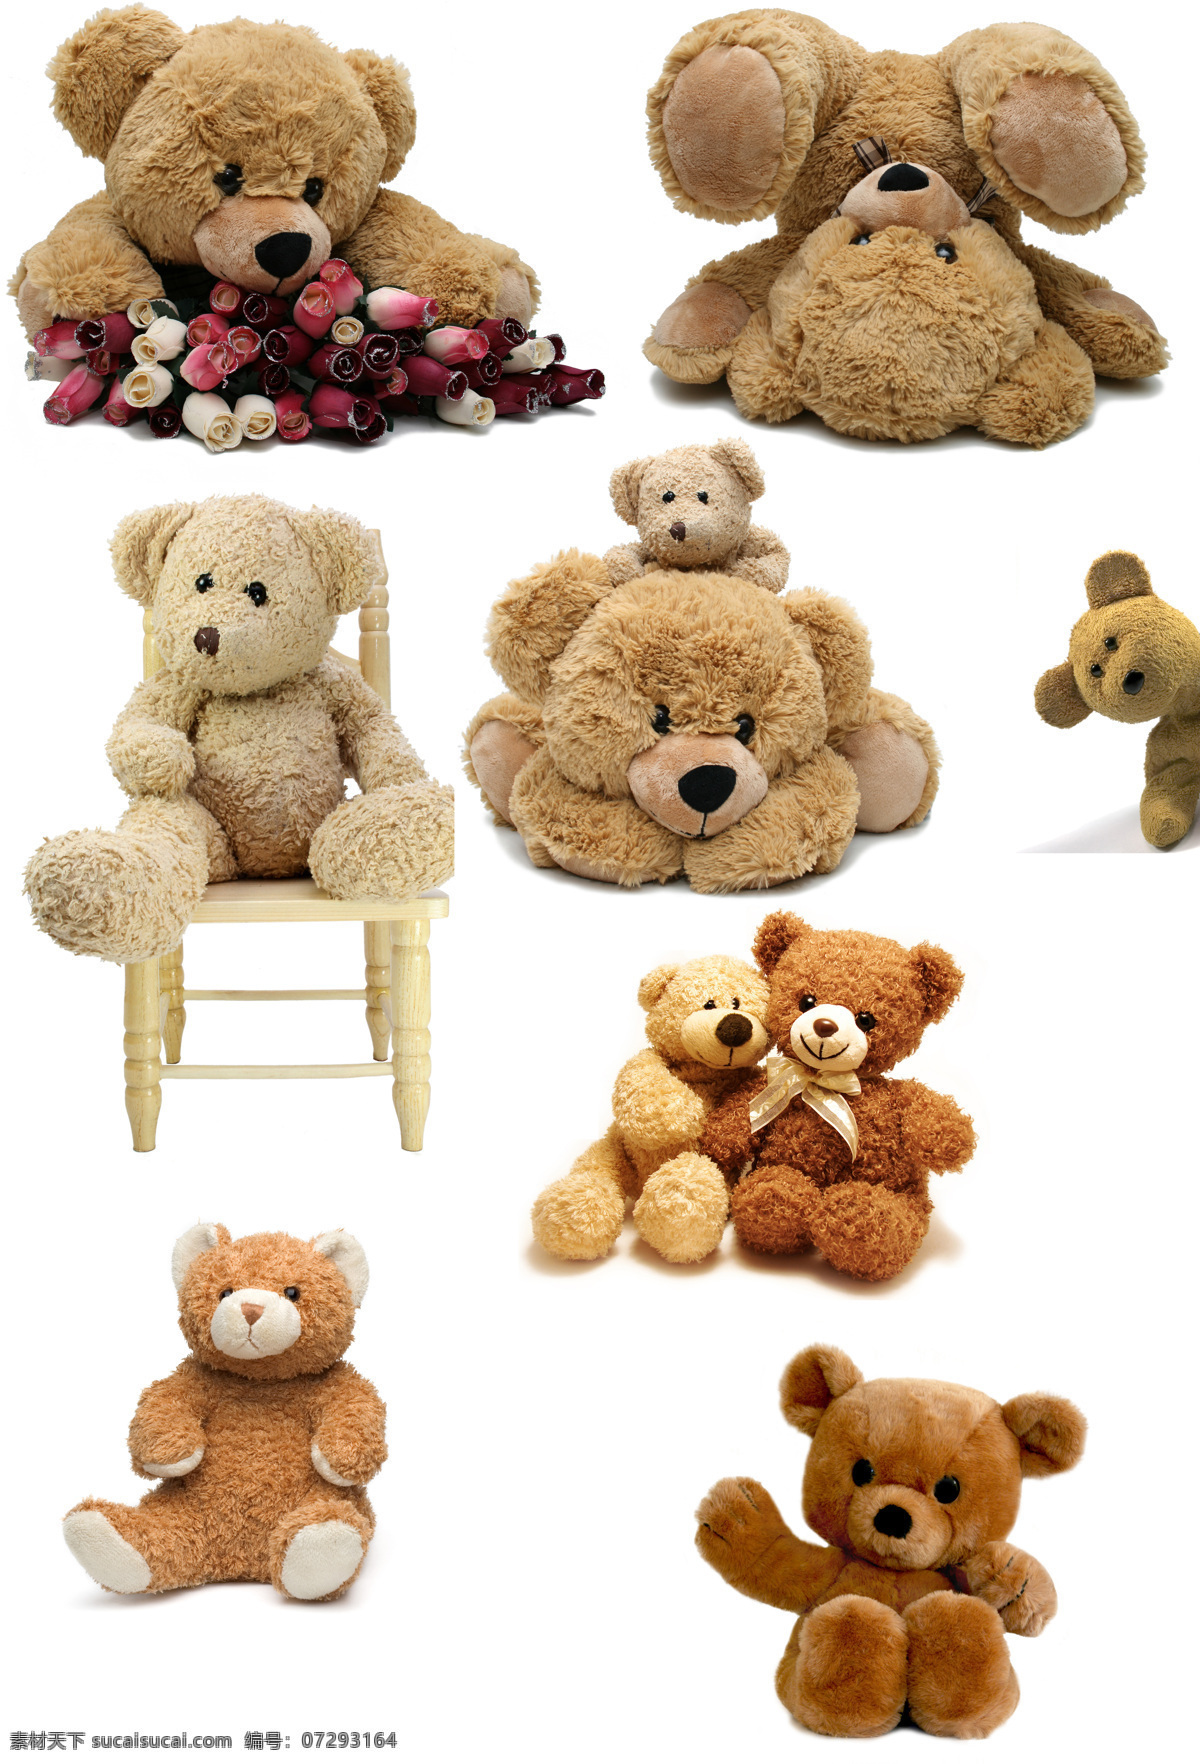 玩具 熊 布娃娃 生活百科 生活用品 玩具熊 小熊 设计素材 模板下载 毛毛熊 psd源文件